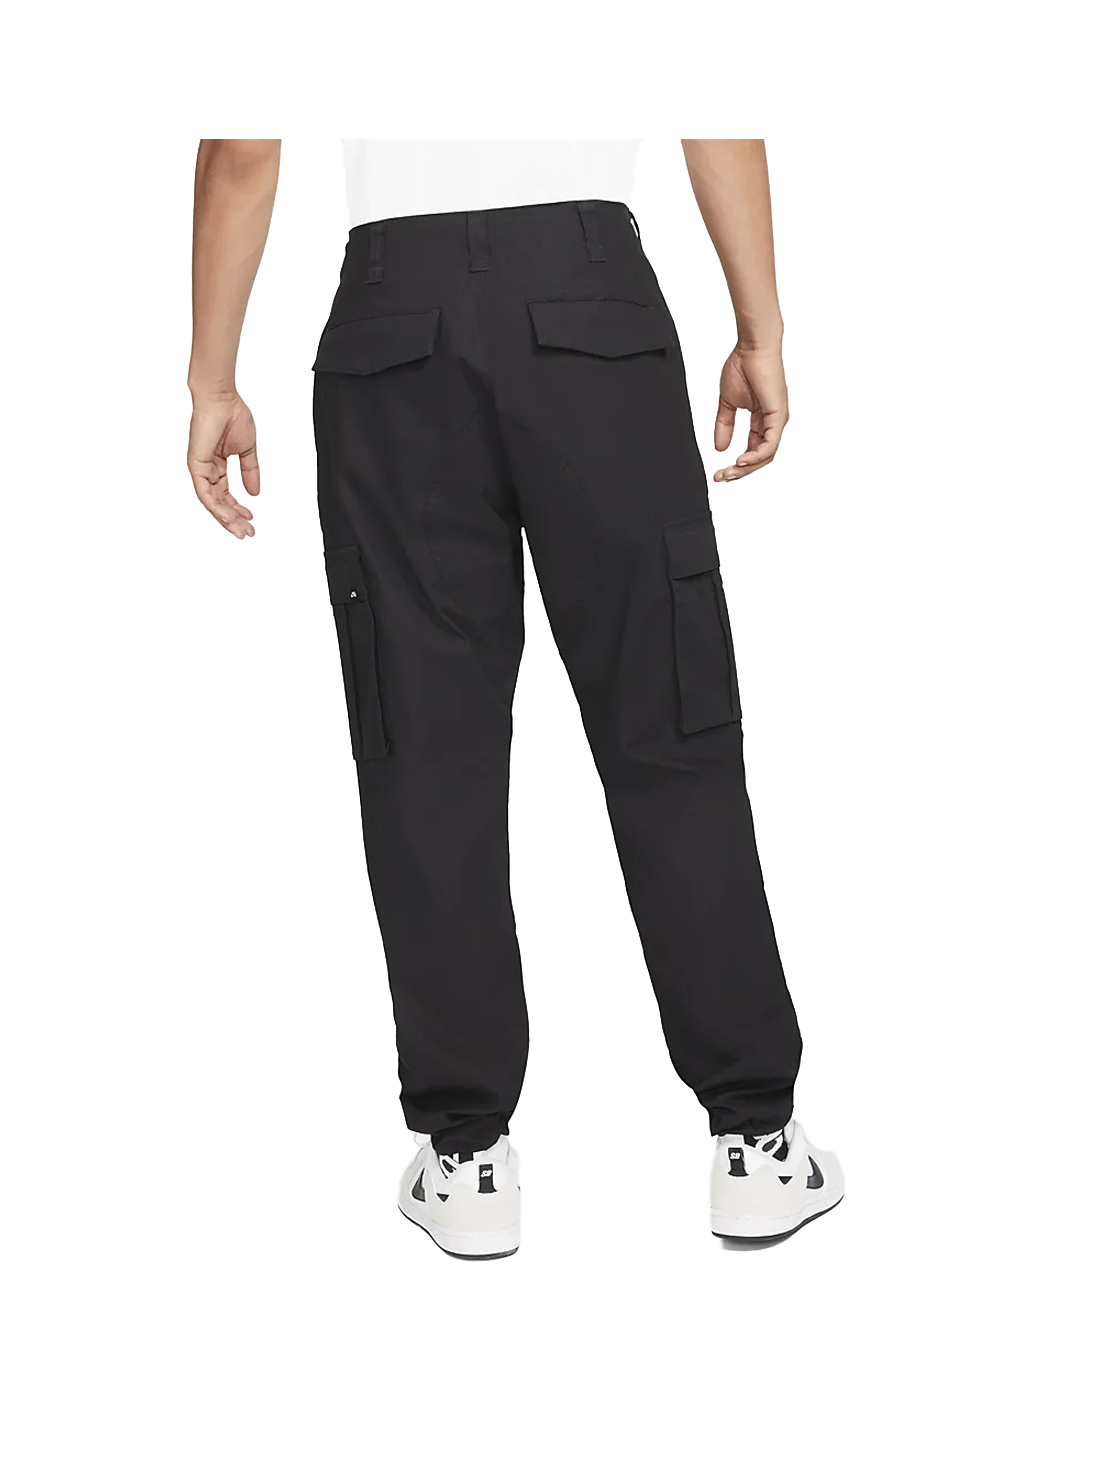 Nike SB FTM Cargo Pants - Black 